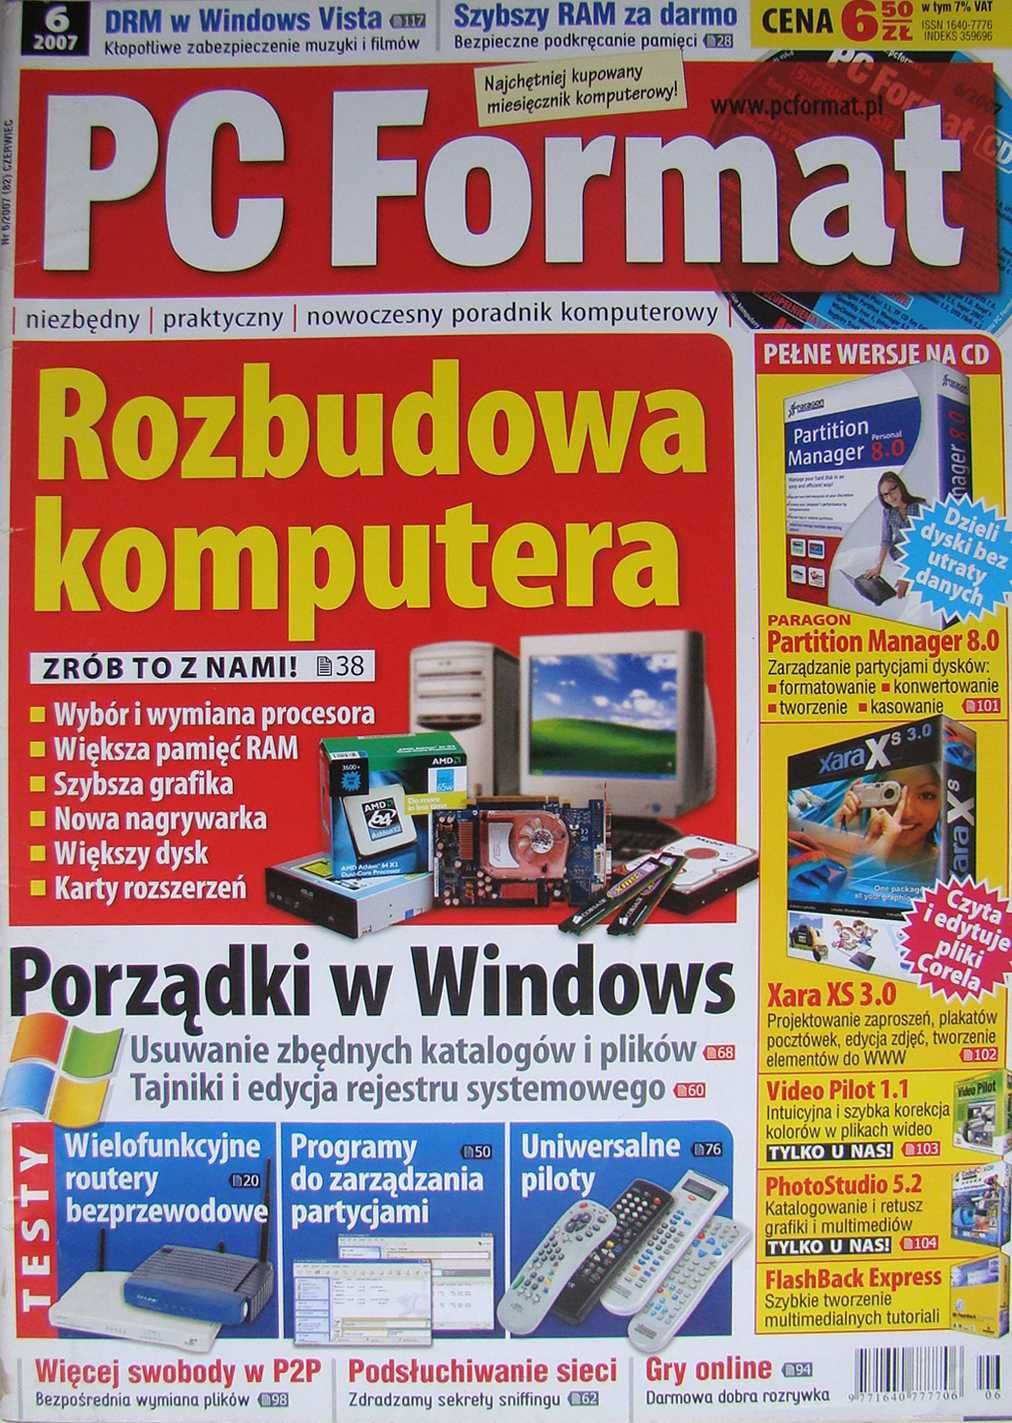 PC Format. Nr 1, 3-11. 2007. 10 egz. z dodatkami CD